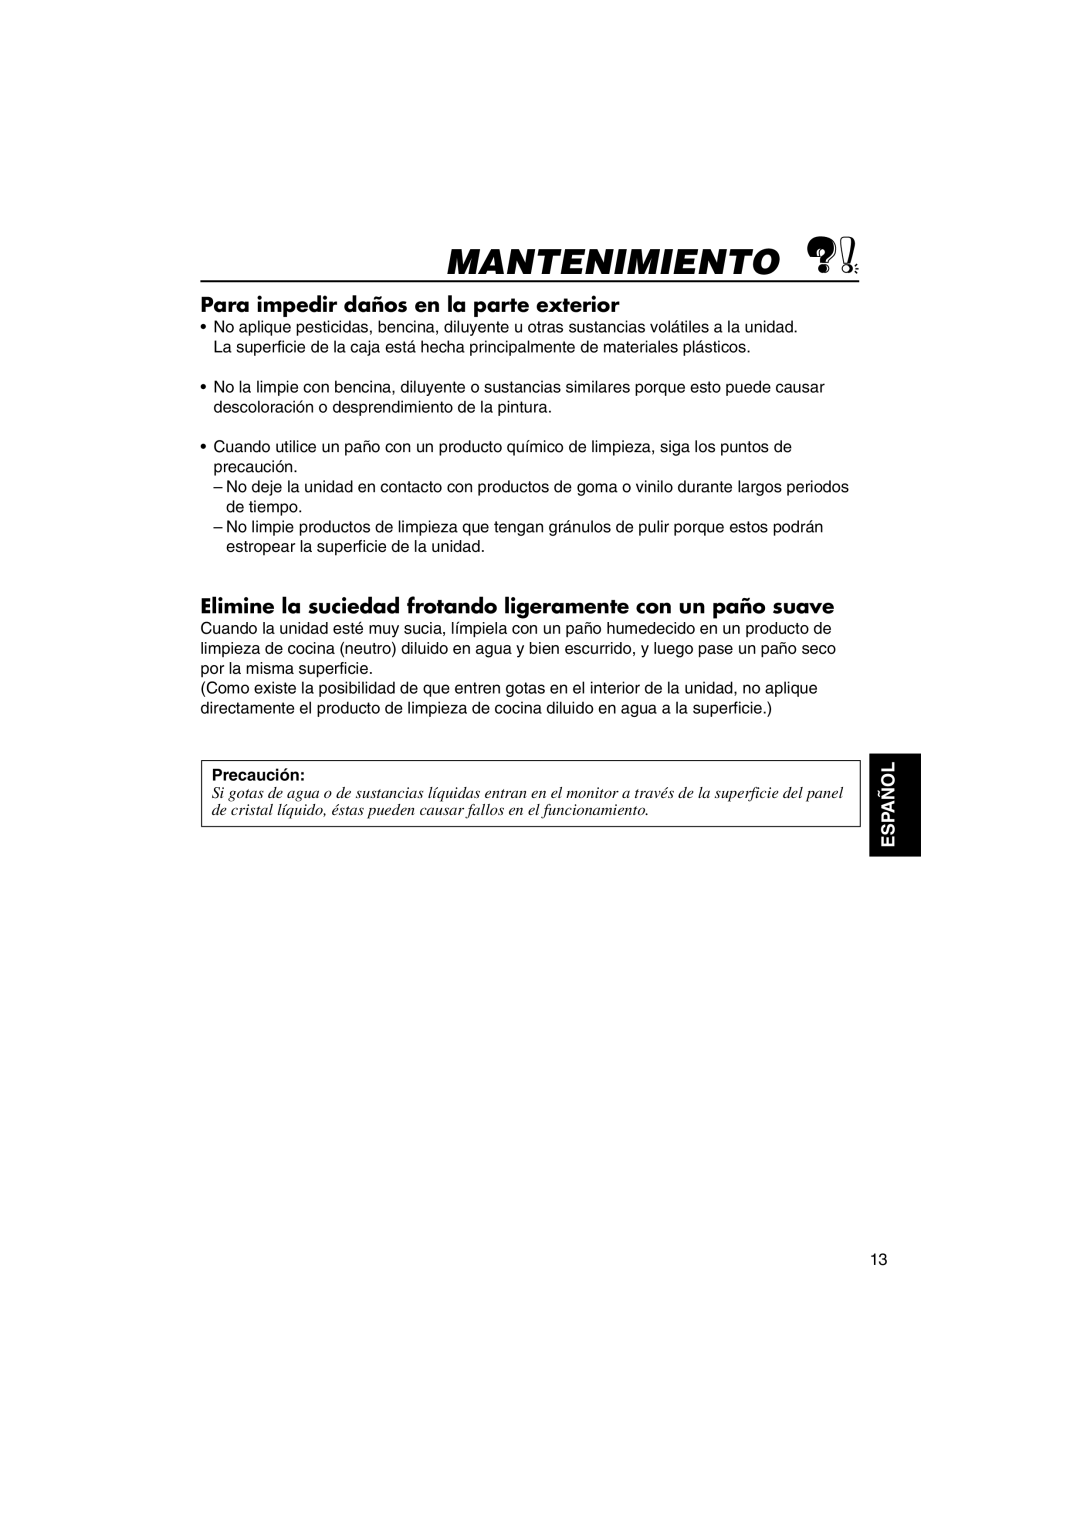 JVC KV-MH6500 manual Mantenimiento, Para impedir daños en la parte exterior, Precaución, Español 